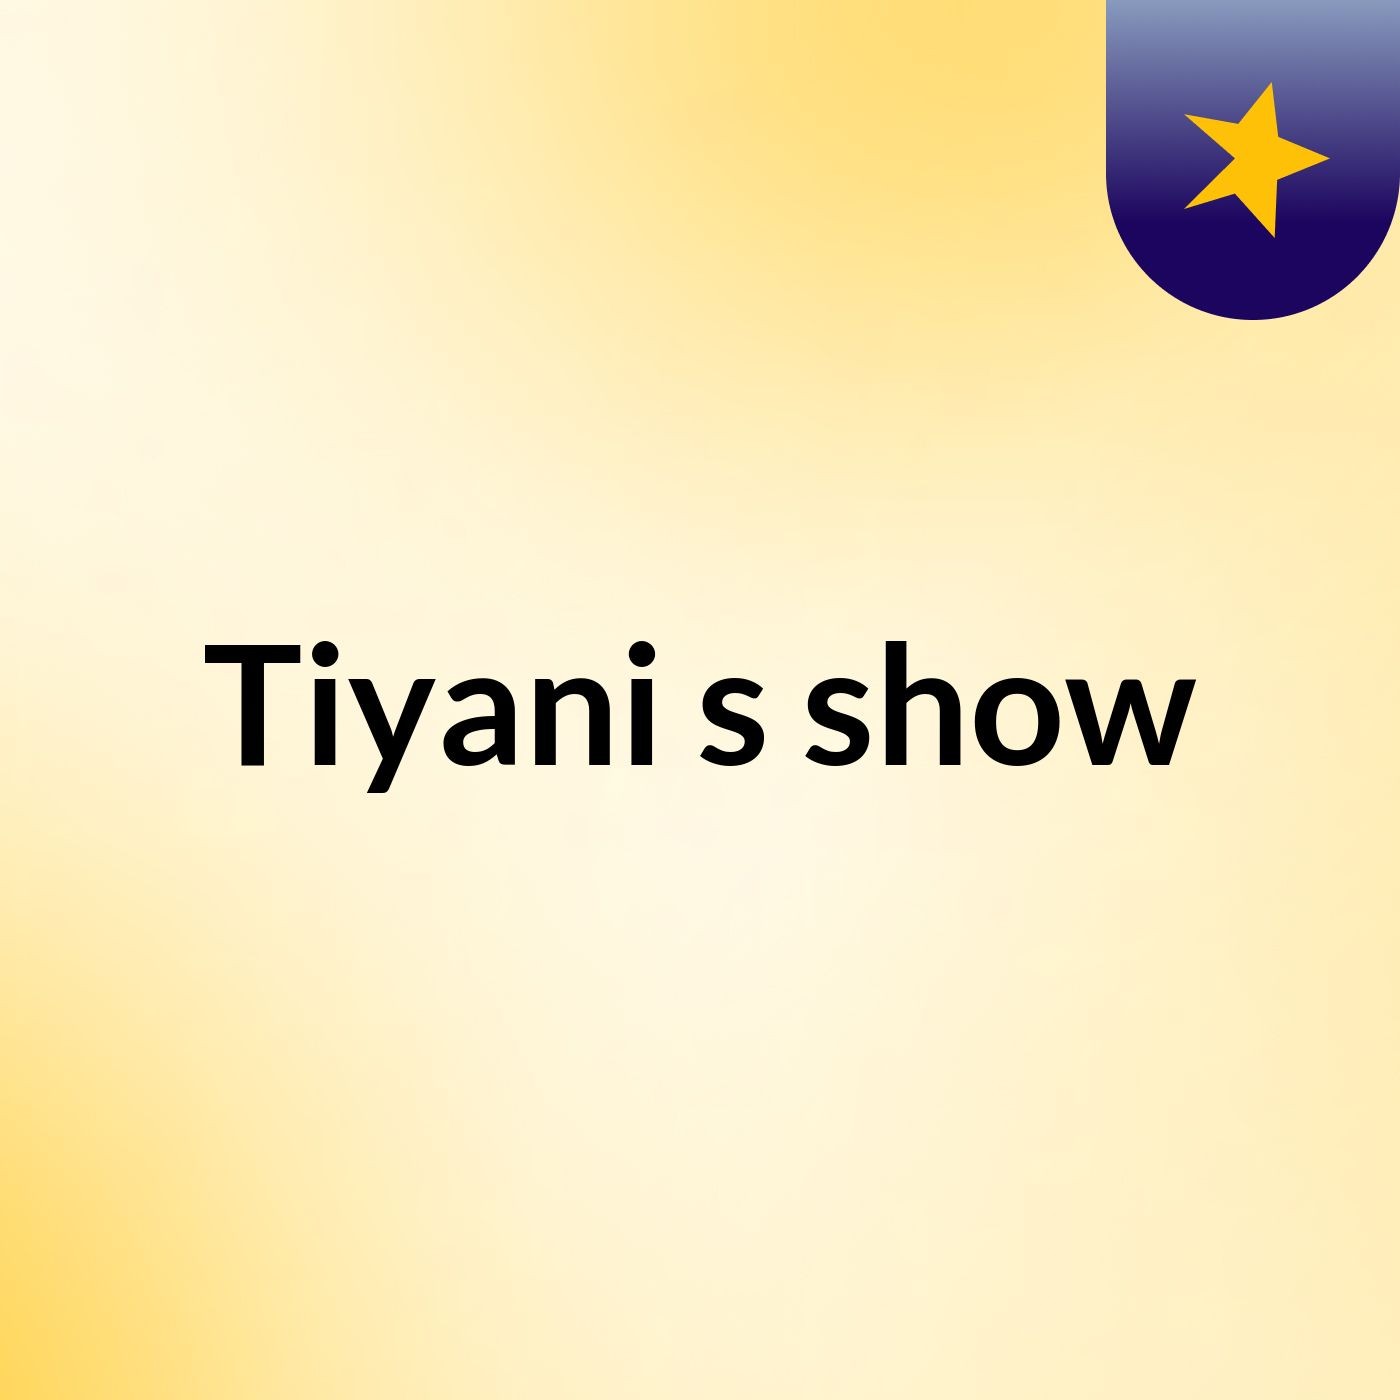 Tiyani's show